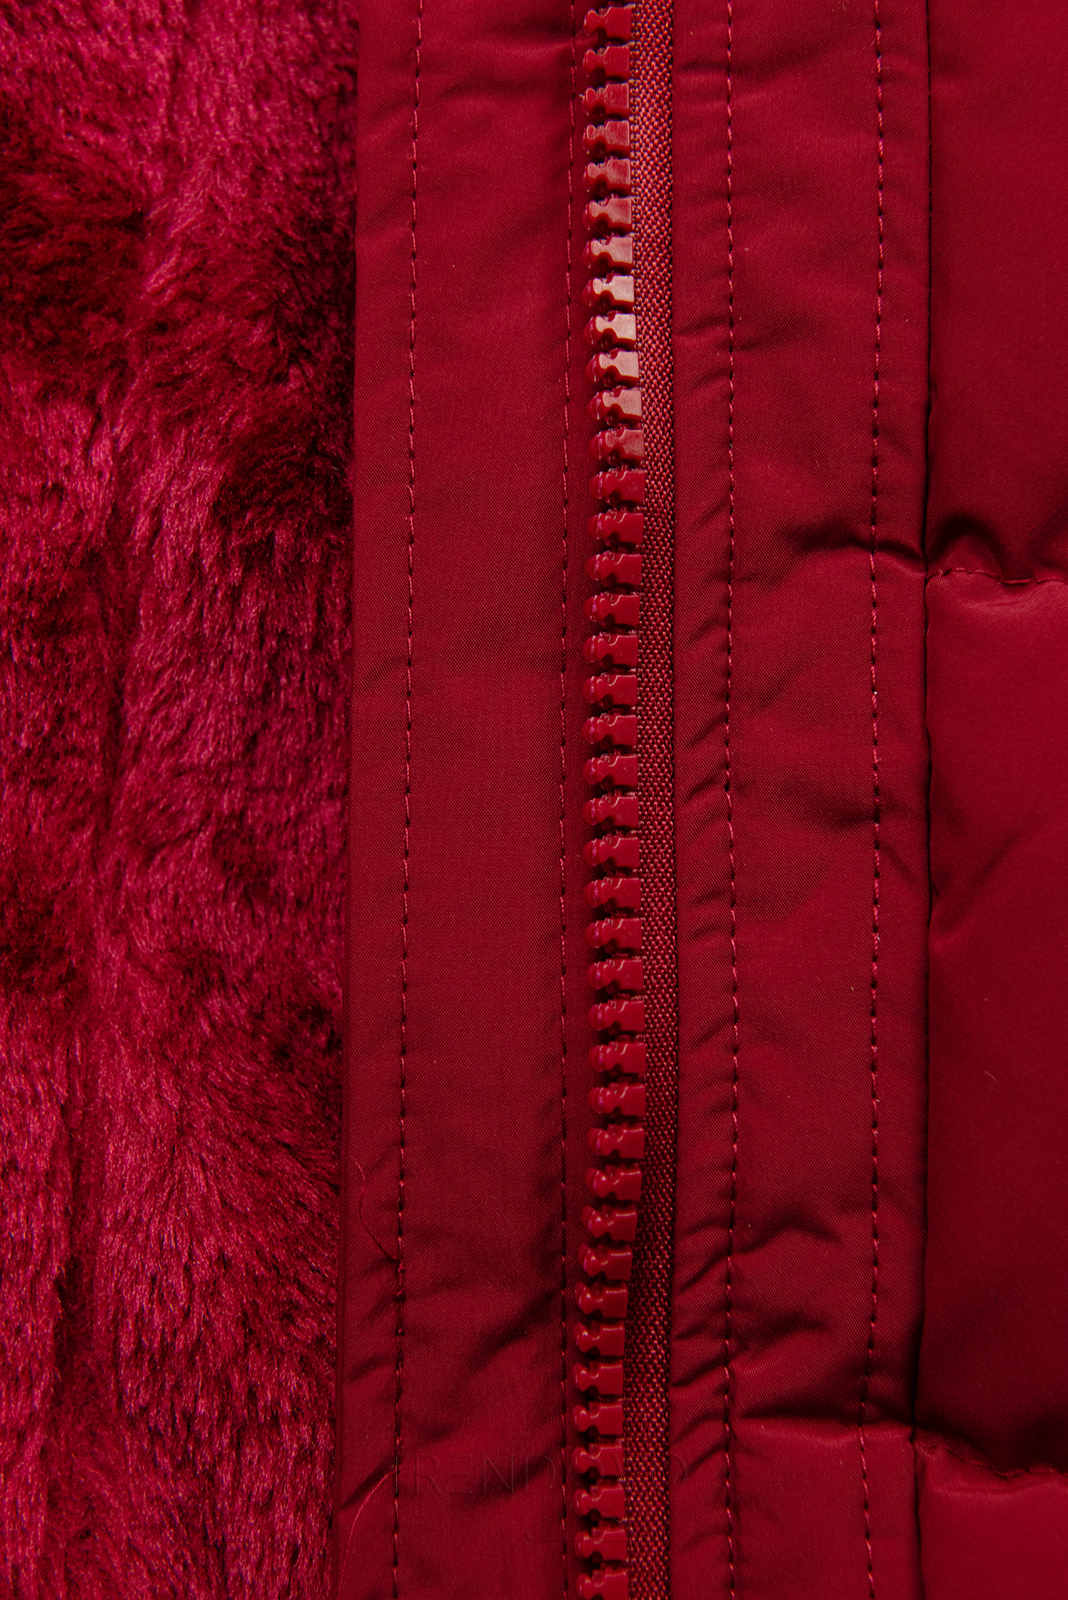 Červená zimní bunda se stahováním v pase